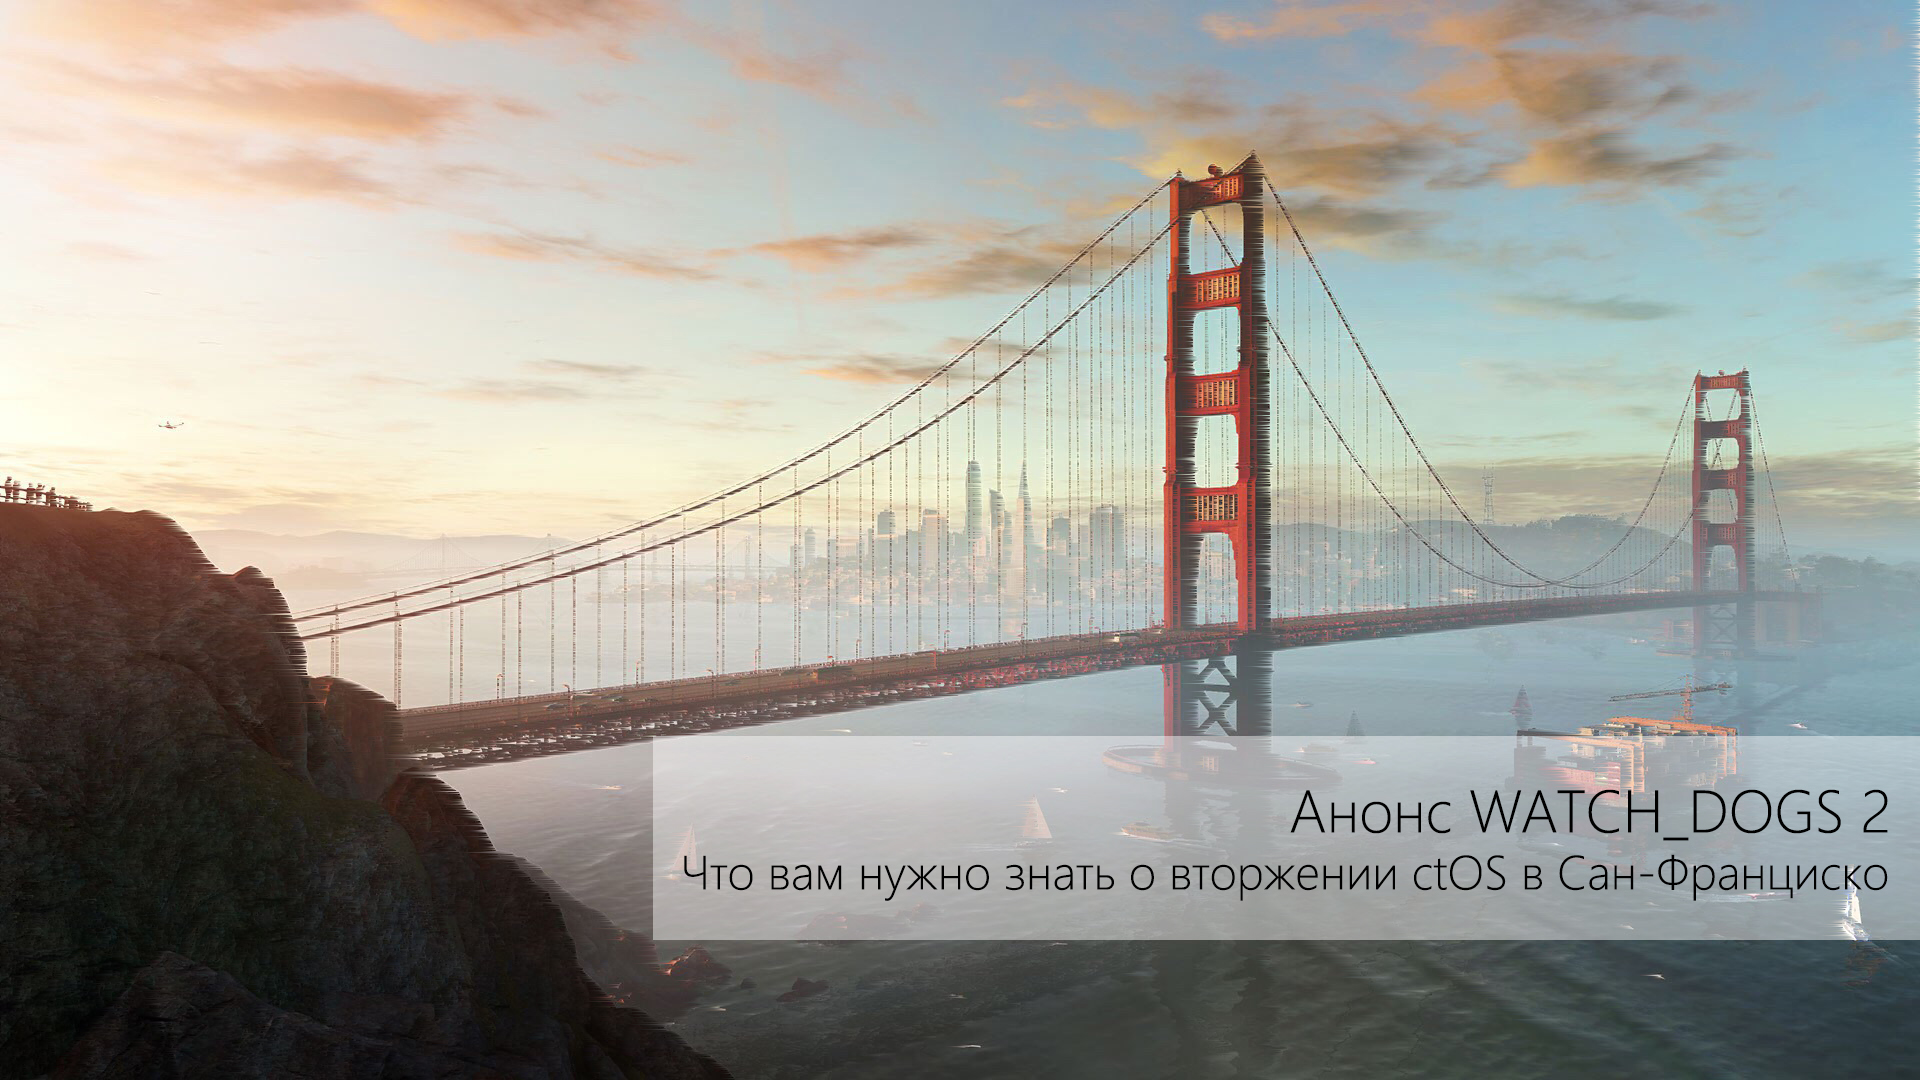 Watch Dogs 2 — Что вам нужно знать о вторжении CTOS в Сан-Франциско